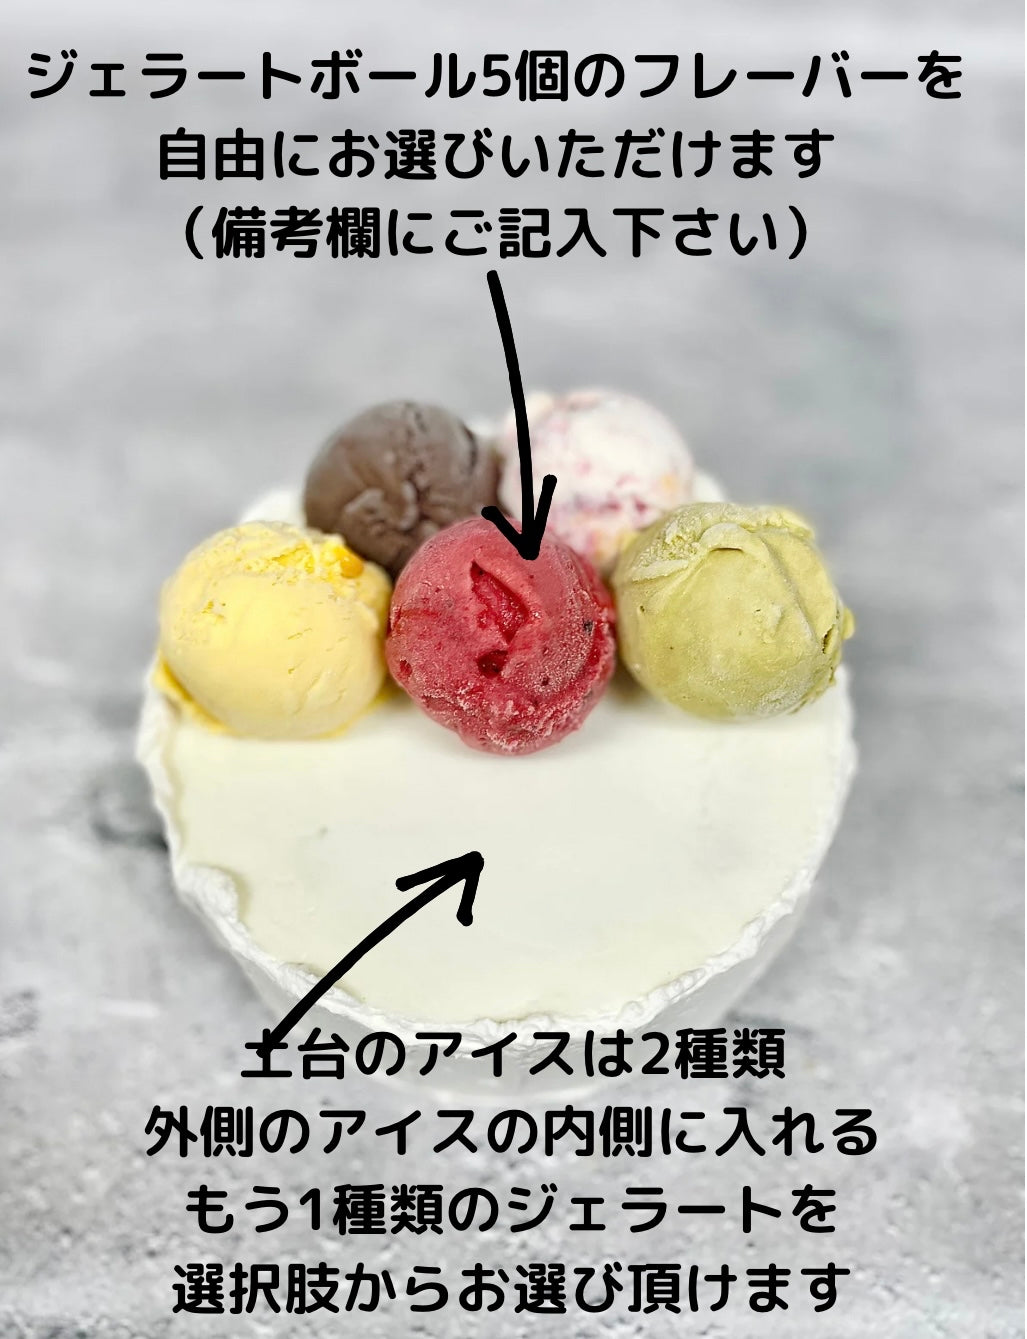 冷凍発送】HIDAKAのオーダージェラートケーキ「ミックスベリーのアイス